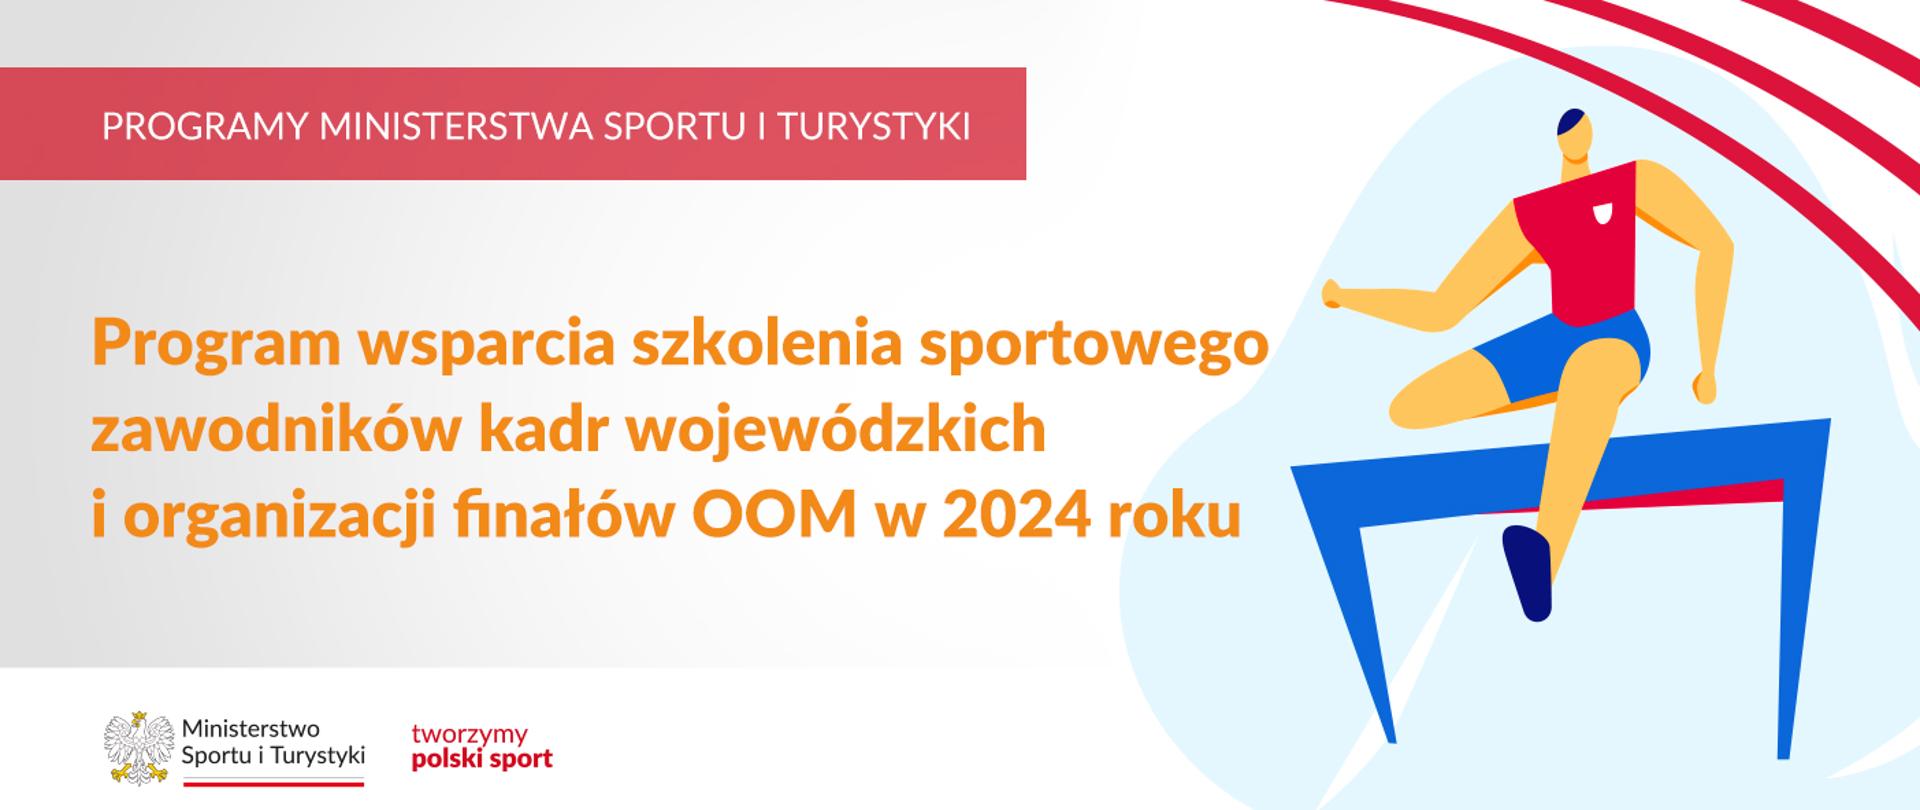 Na samej górze grafiki znajduje się biały napis na czerwonym tle "Programy Ministerstwa Sportu i Turystyki", a poniżej napis "Program wsparcia szkolenia sportowego zawodników kadr wojewódzkich i organizacji finałów OOM w 2024 roku". Na samym dole znajduje się logotyp Ministerstwa sportu i Turystyki oraz hasło tworzymy polski sport. Po prawej stornie grafiki znajduję się rysunek lekkoatlety skaczącego przez płotek.